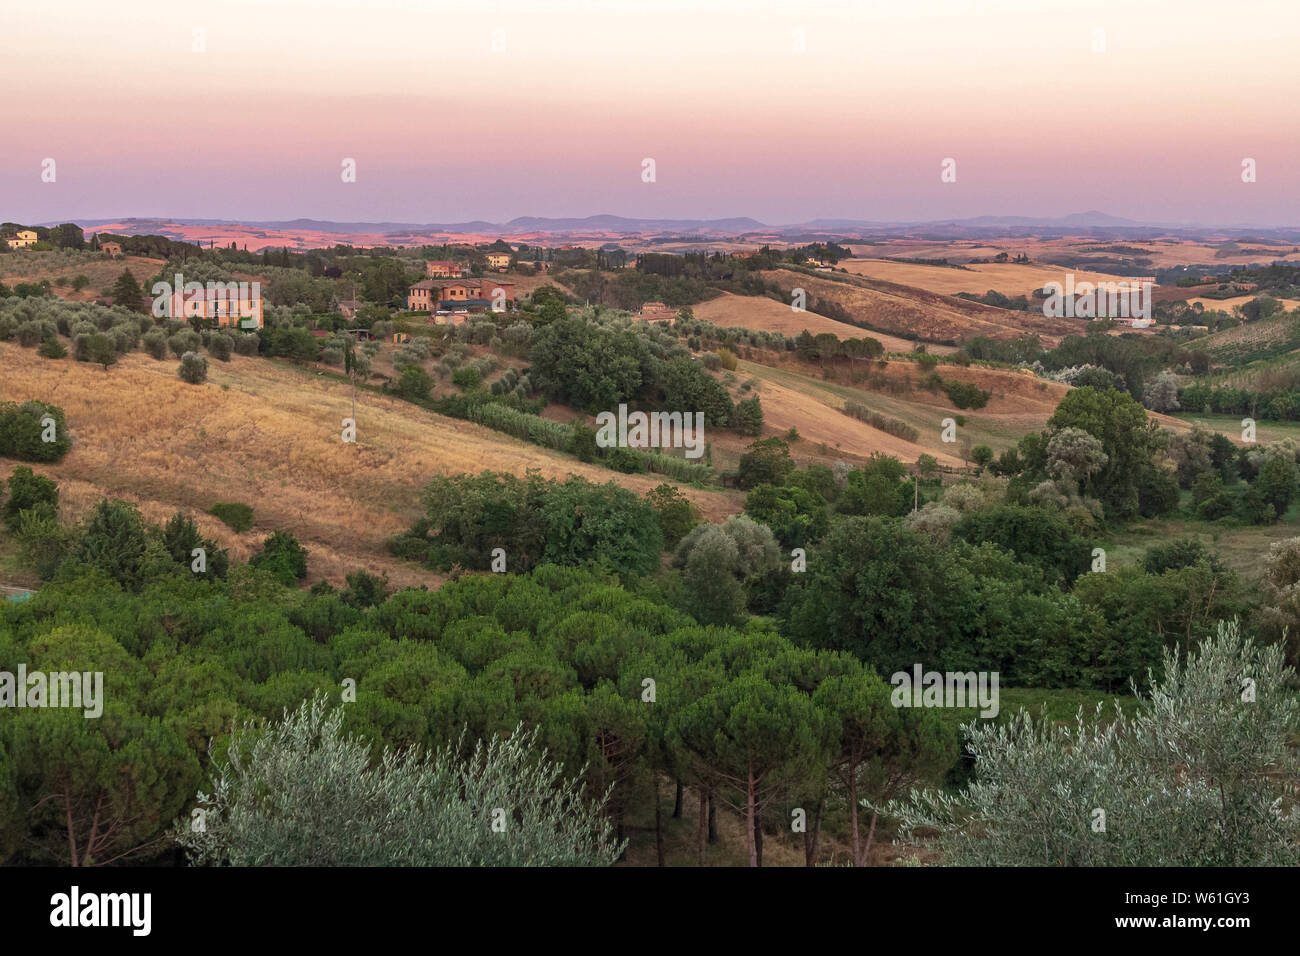 Die schöne Landschaft der Toskana, in der Nähe von Siena, bei Sonnenuntergang Stunde mit der Dämmerung Stockfoto